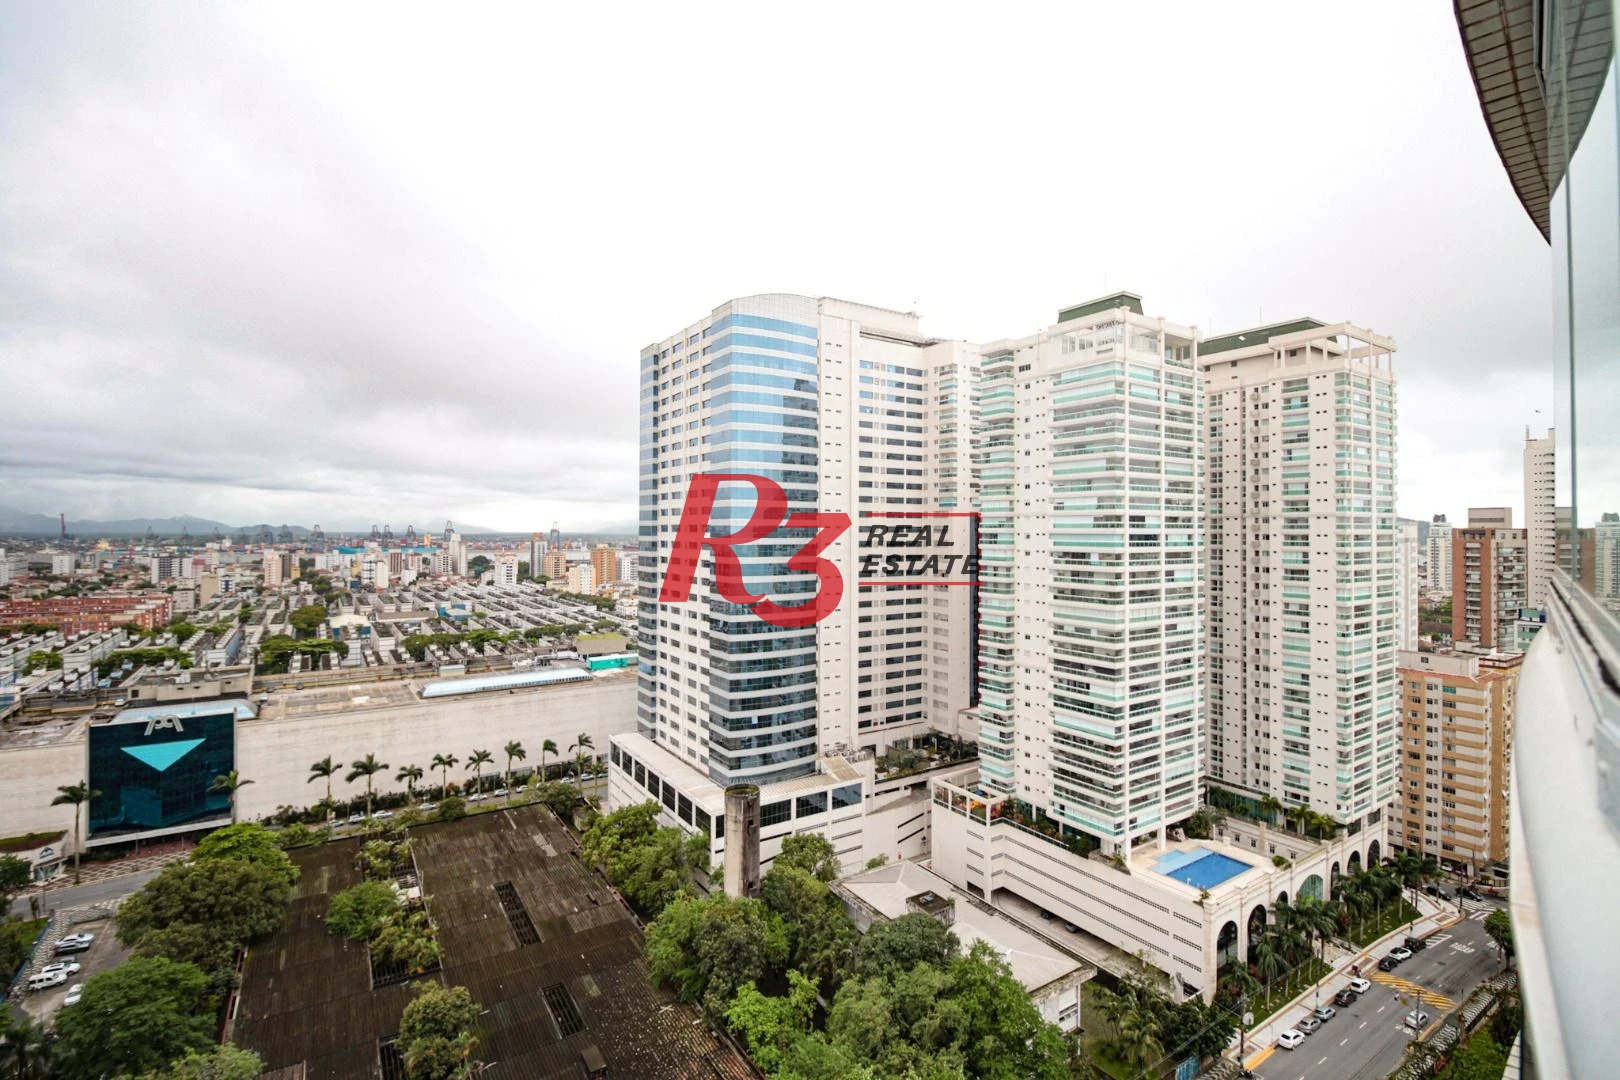 Apartamento com 4 dormitórios à venda, 255 m² por R$ 3.890.000,00 - Aparecida - Santos/SP